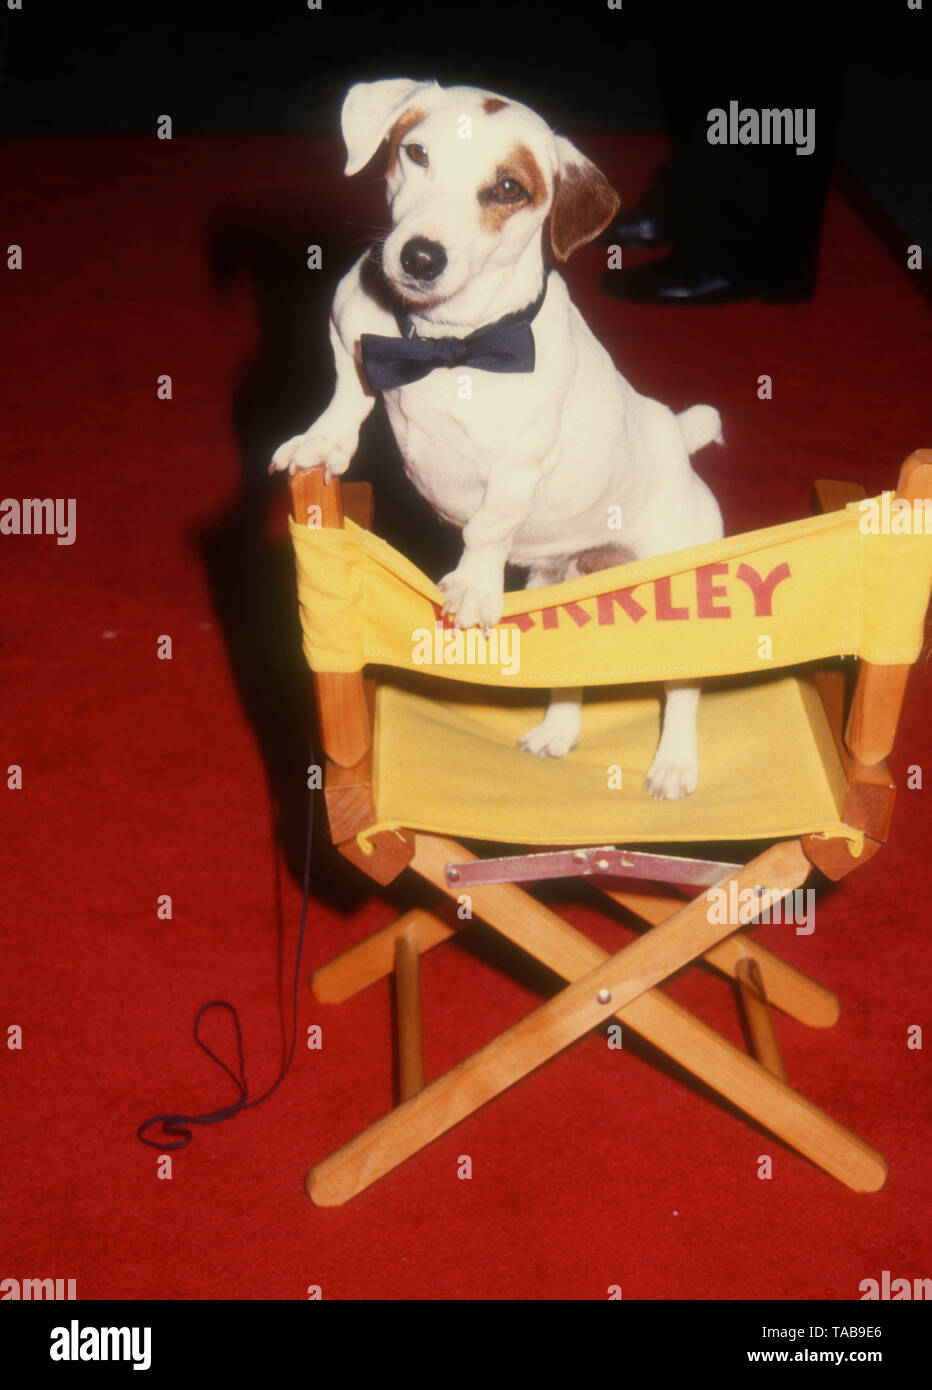 Westwood, Californie, USA 28 avril 1994 Barkley le chien assiste à la Metro Goldwyn Mayer' 'That's Entertainment III" Création le 28 avril 1994 au Théâtre National de Mann à Westwood, Californie, USA. Photo de Barry King/Alamy Stock Photo Banque D'Images